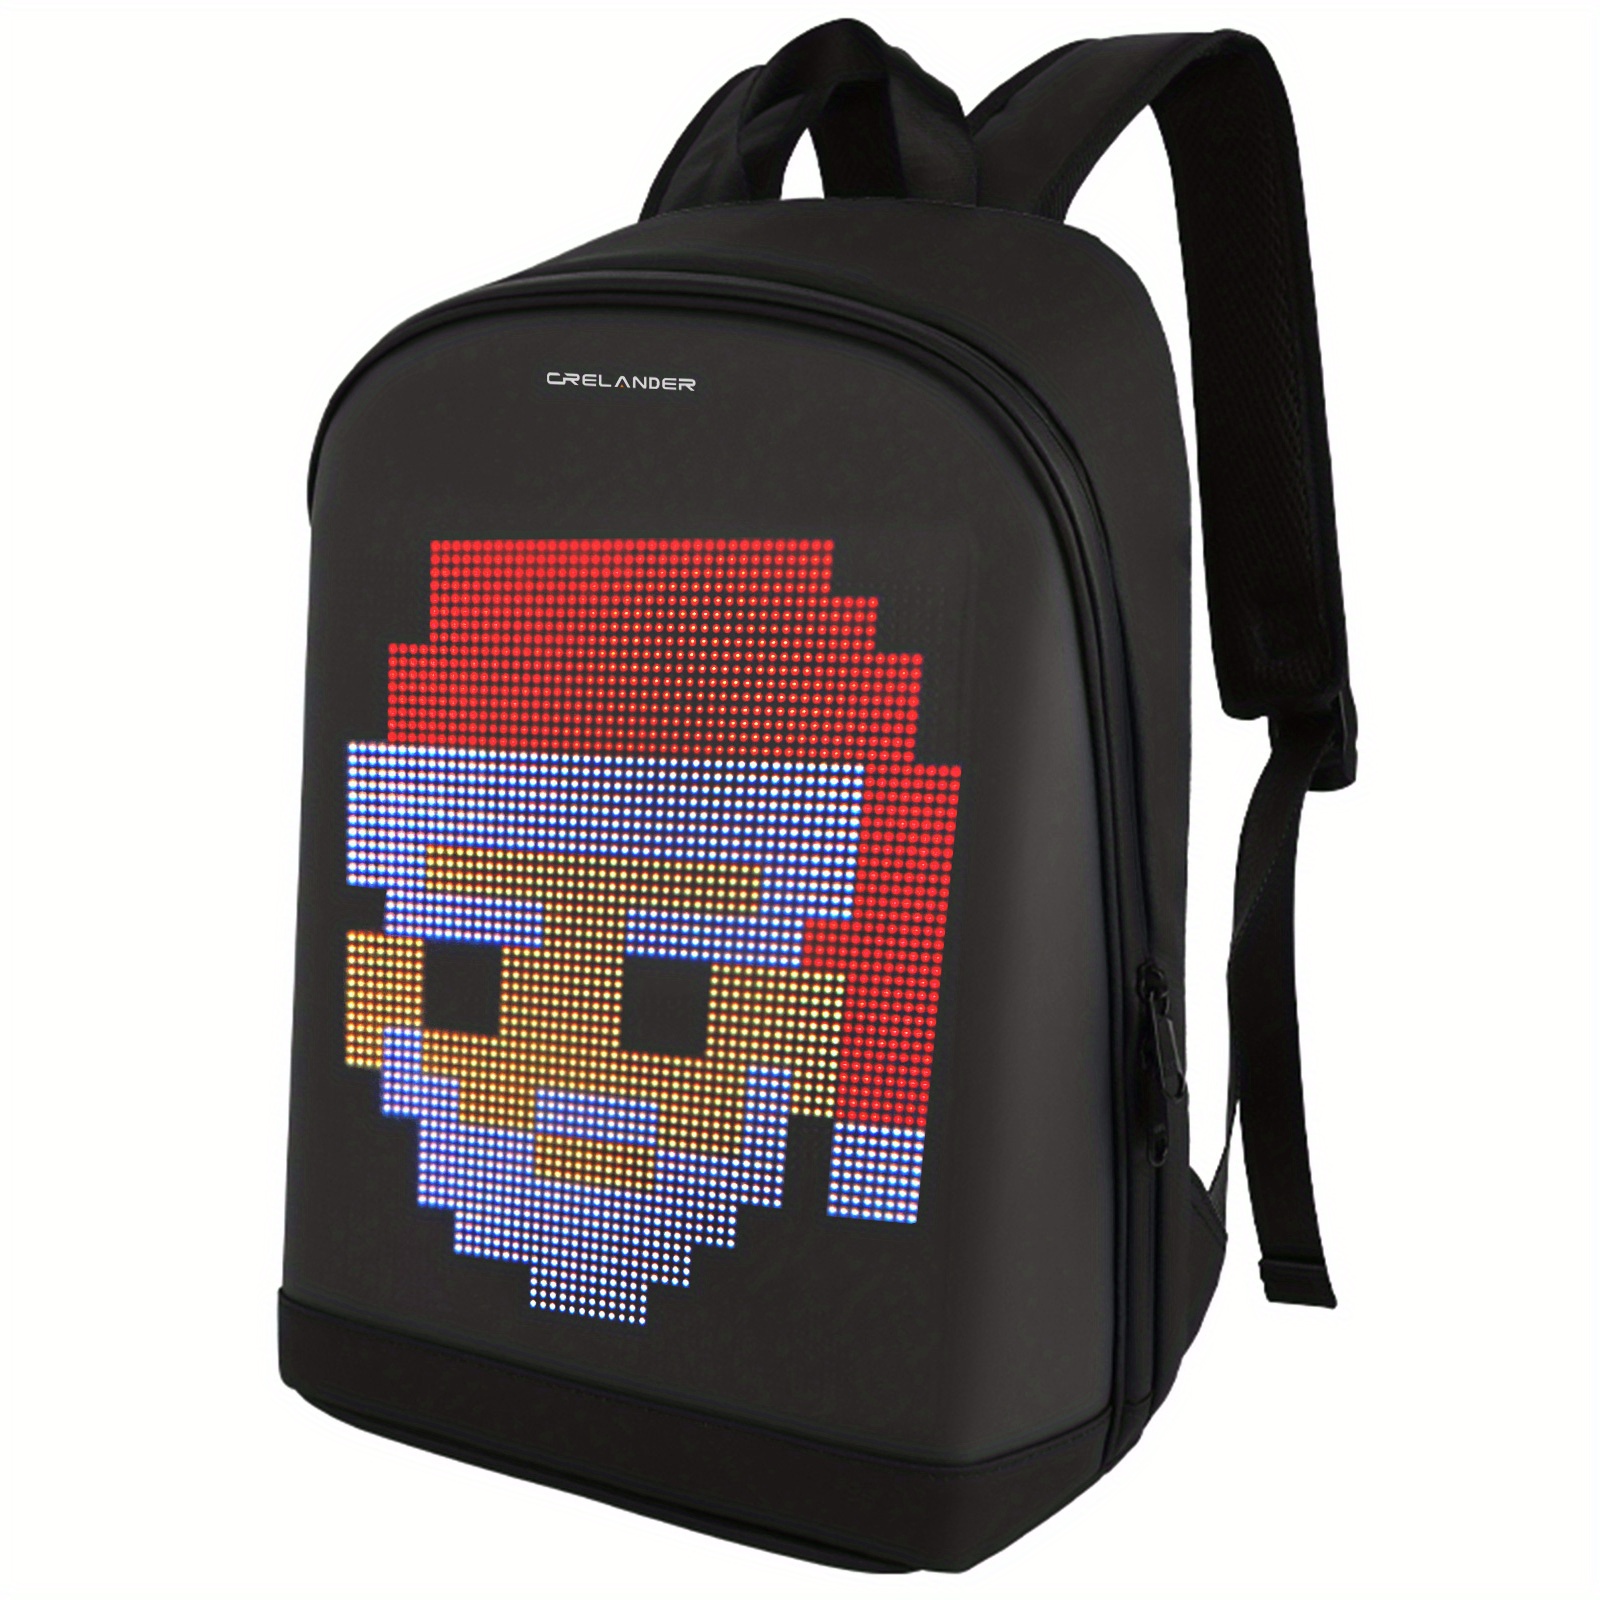 Divoom Backpack-S Pixel Art LED Backpack